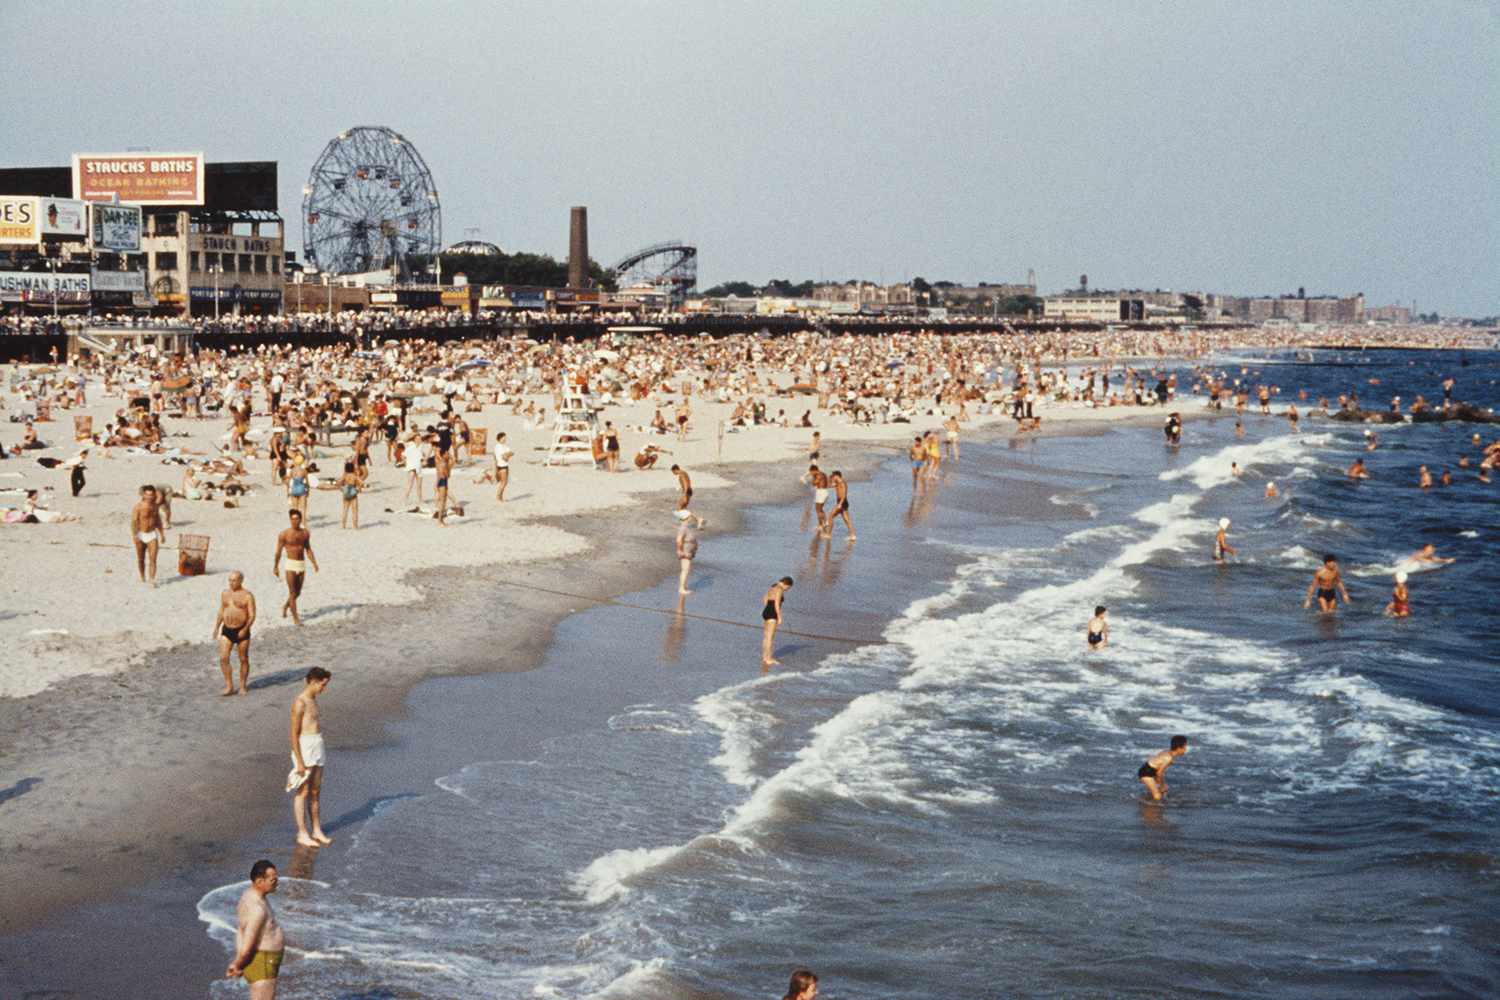 La plage de Coney Island, New York, vers 1960